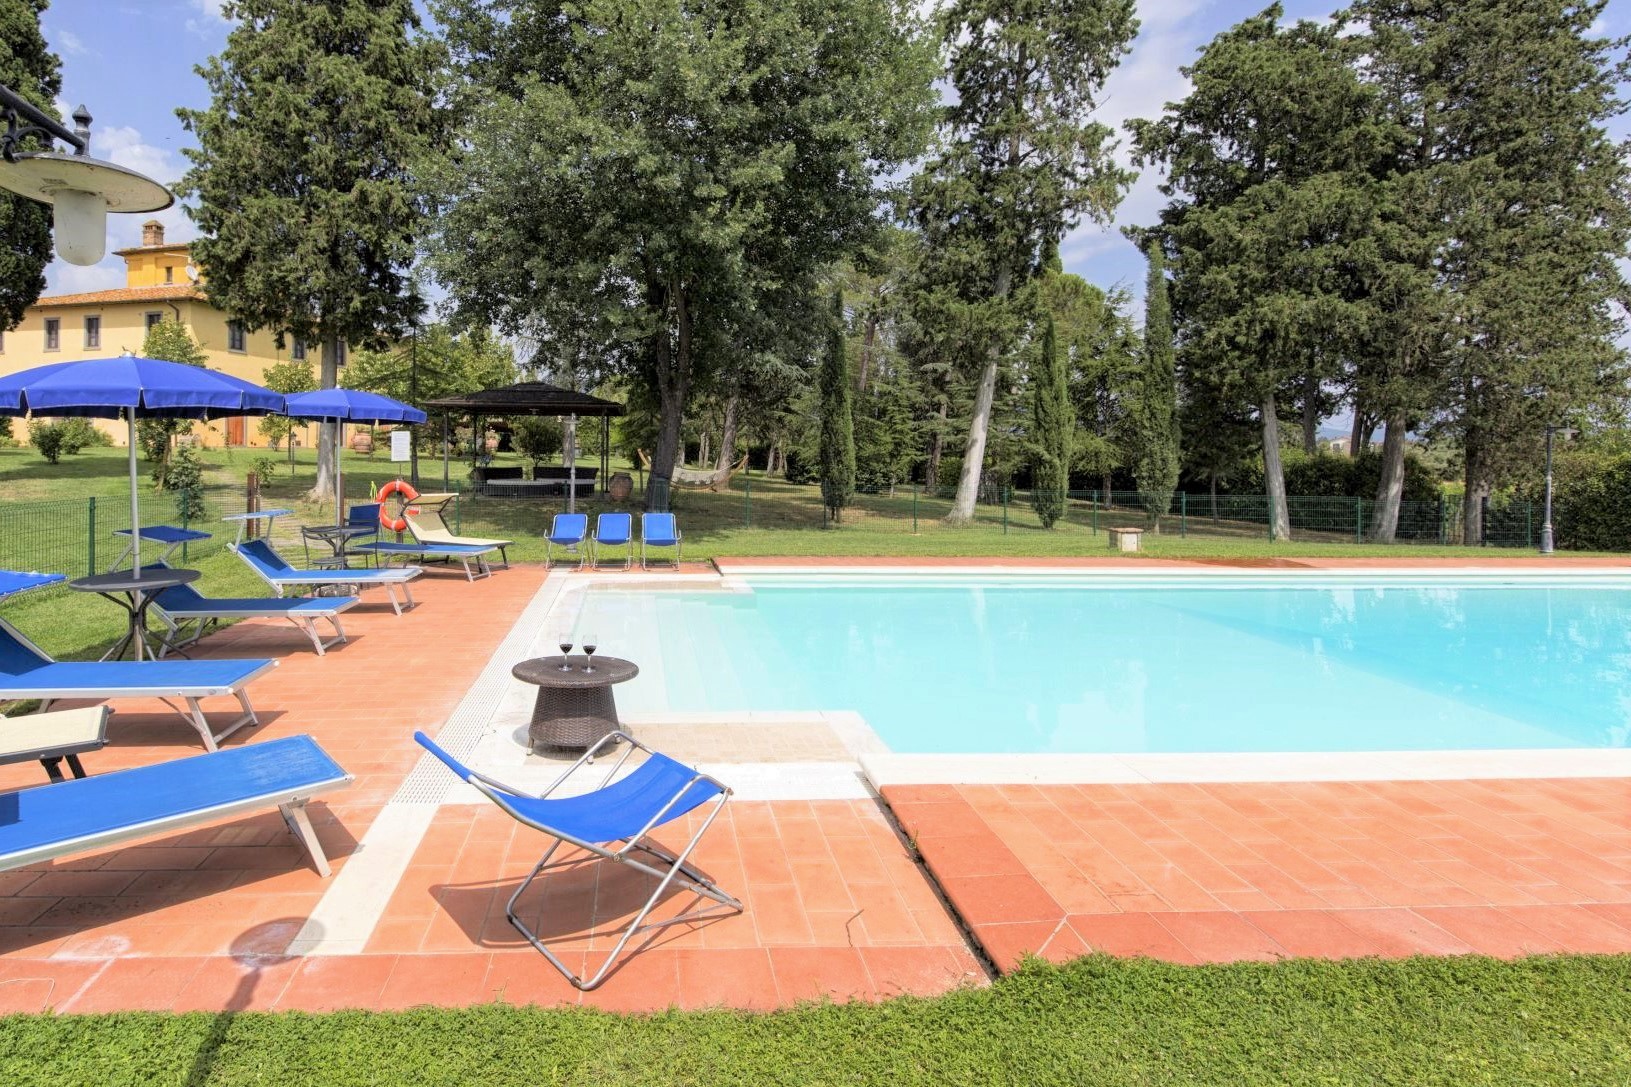 392_4043c90_vakantiewoning, Toscane, luxe vakantiehuis met privé zwembad, Cortona, villa Colombaia, Italië 2